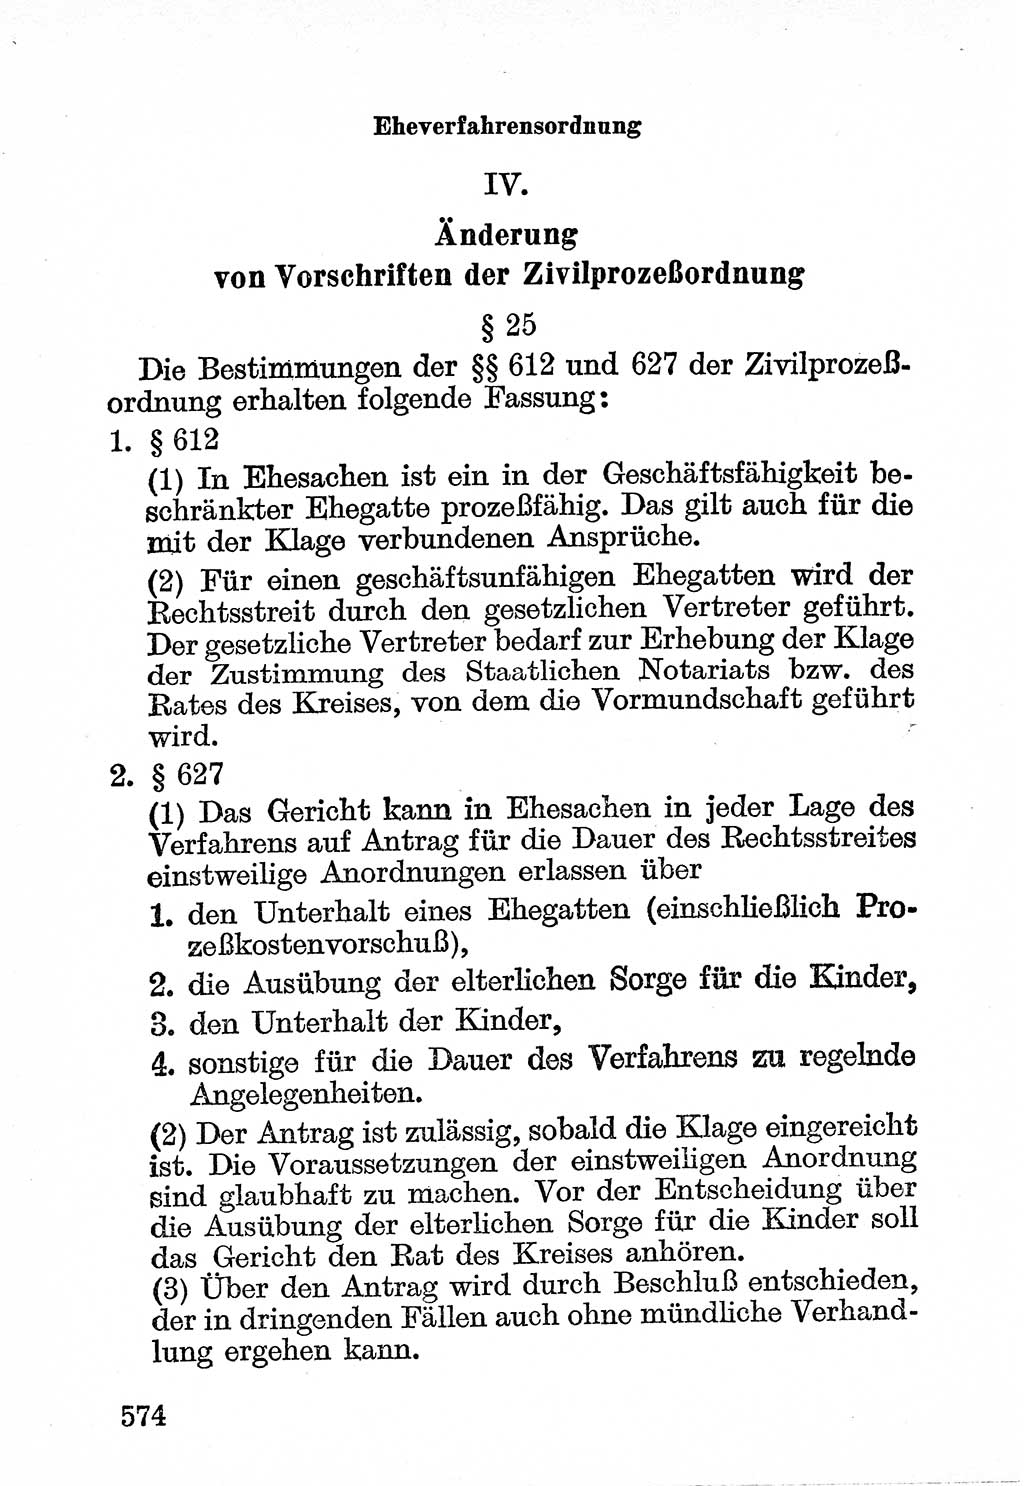 Bürgerliches Gesetzbuch (BGB) nebst wichtigen Nebengesetzen [Deutsche Demokratische Republik (DDR)] 1956, Seite 574 (BGB Nebenges. DDR 1956, S. 574)